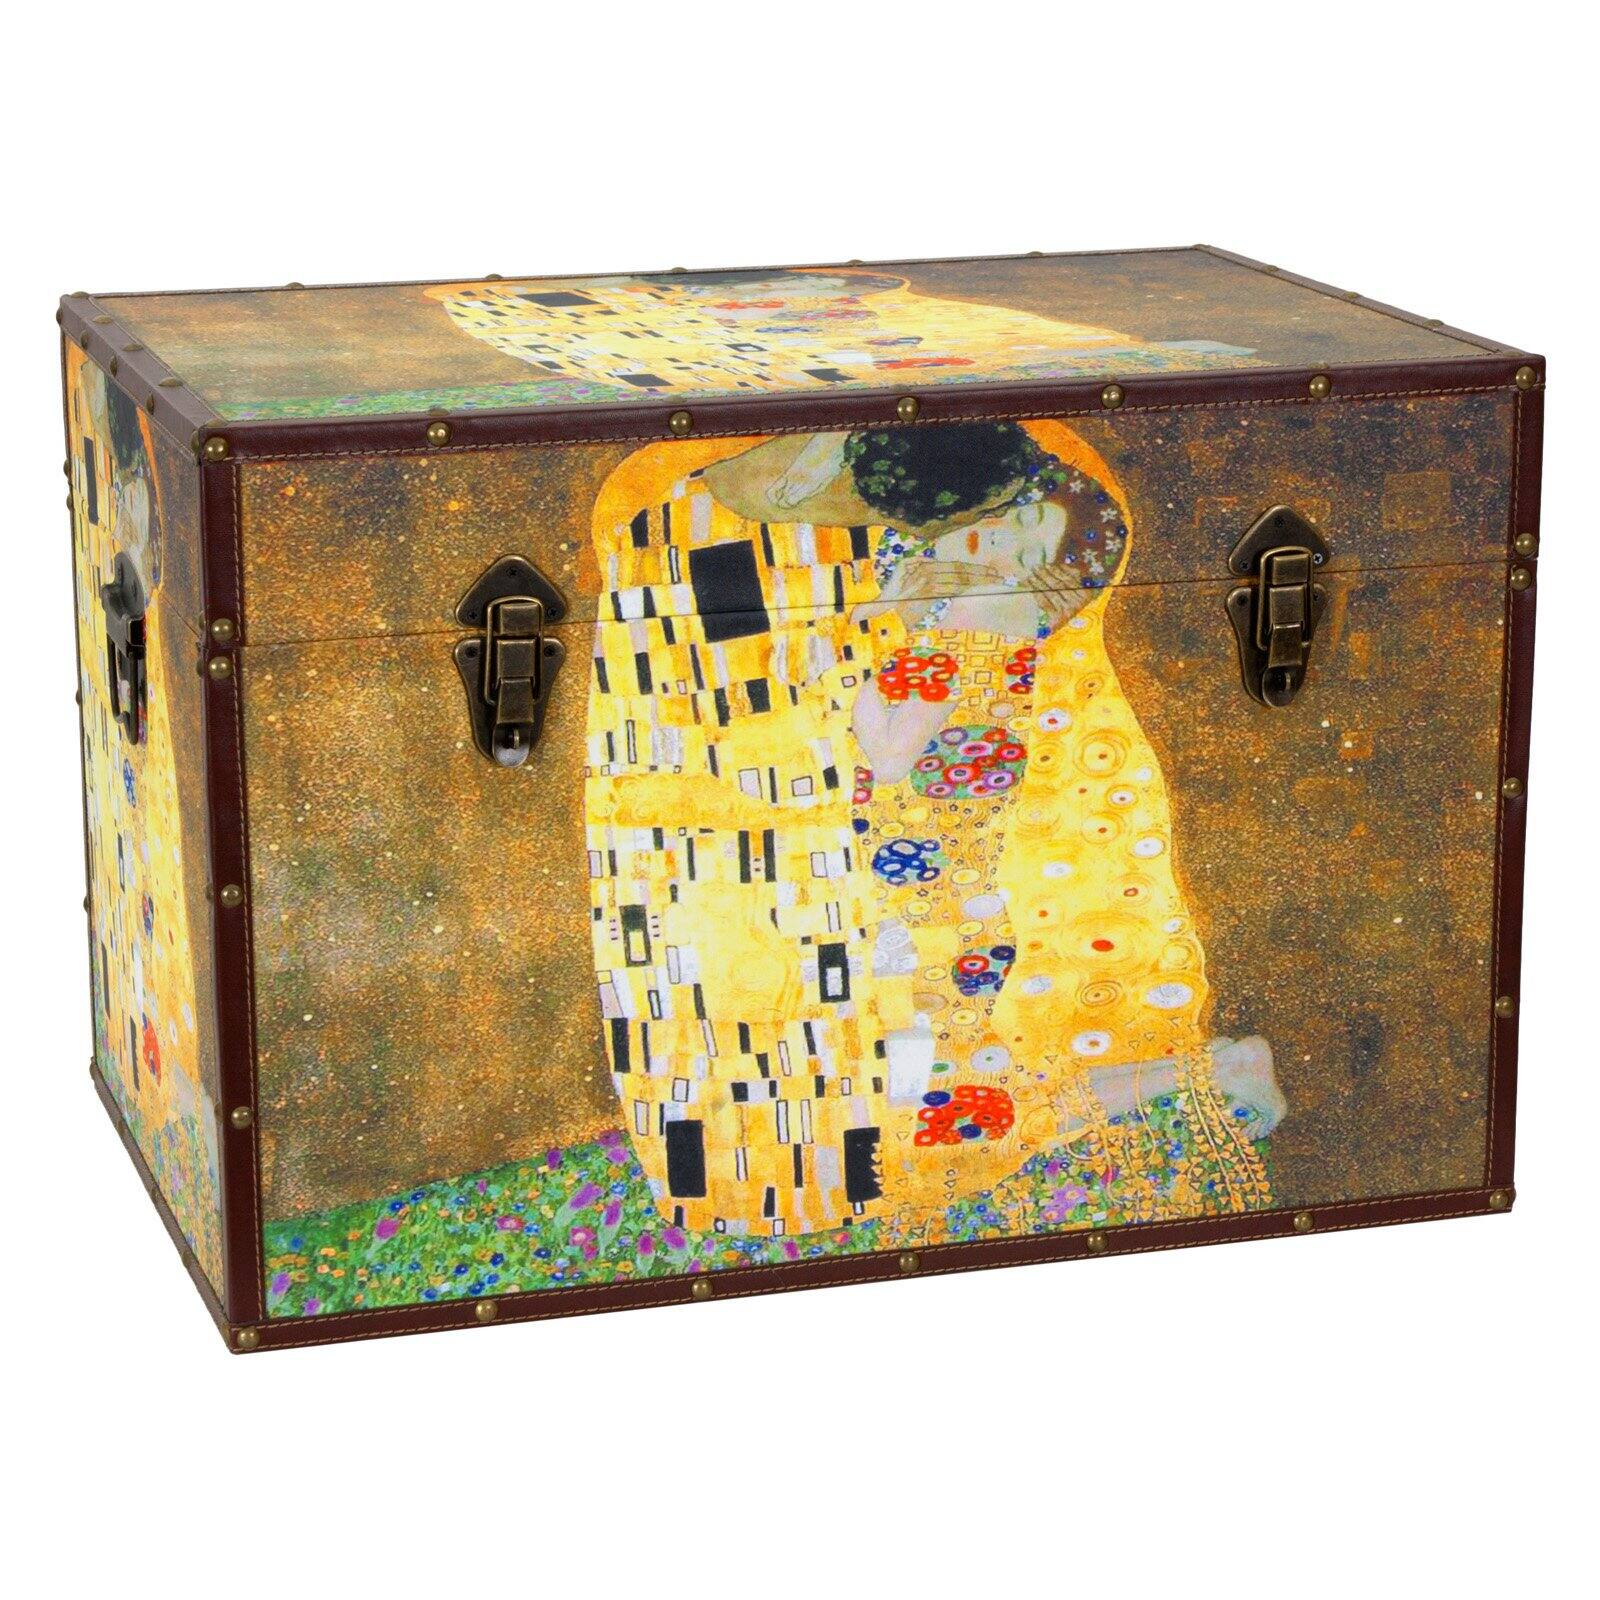 Oriental Furniture Works of Klimt Trunk - image 1 of 4